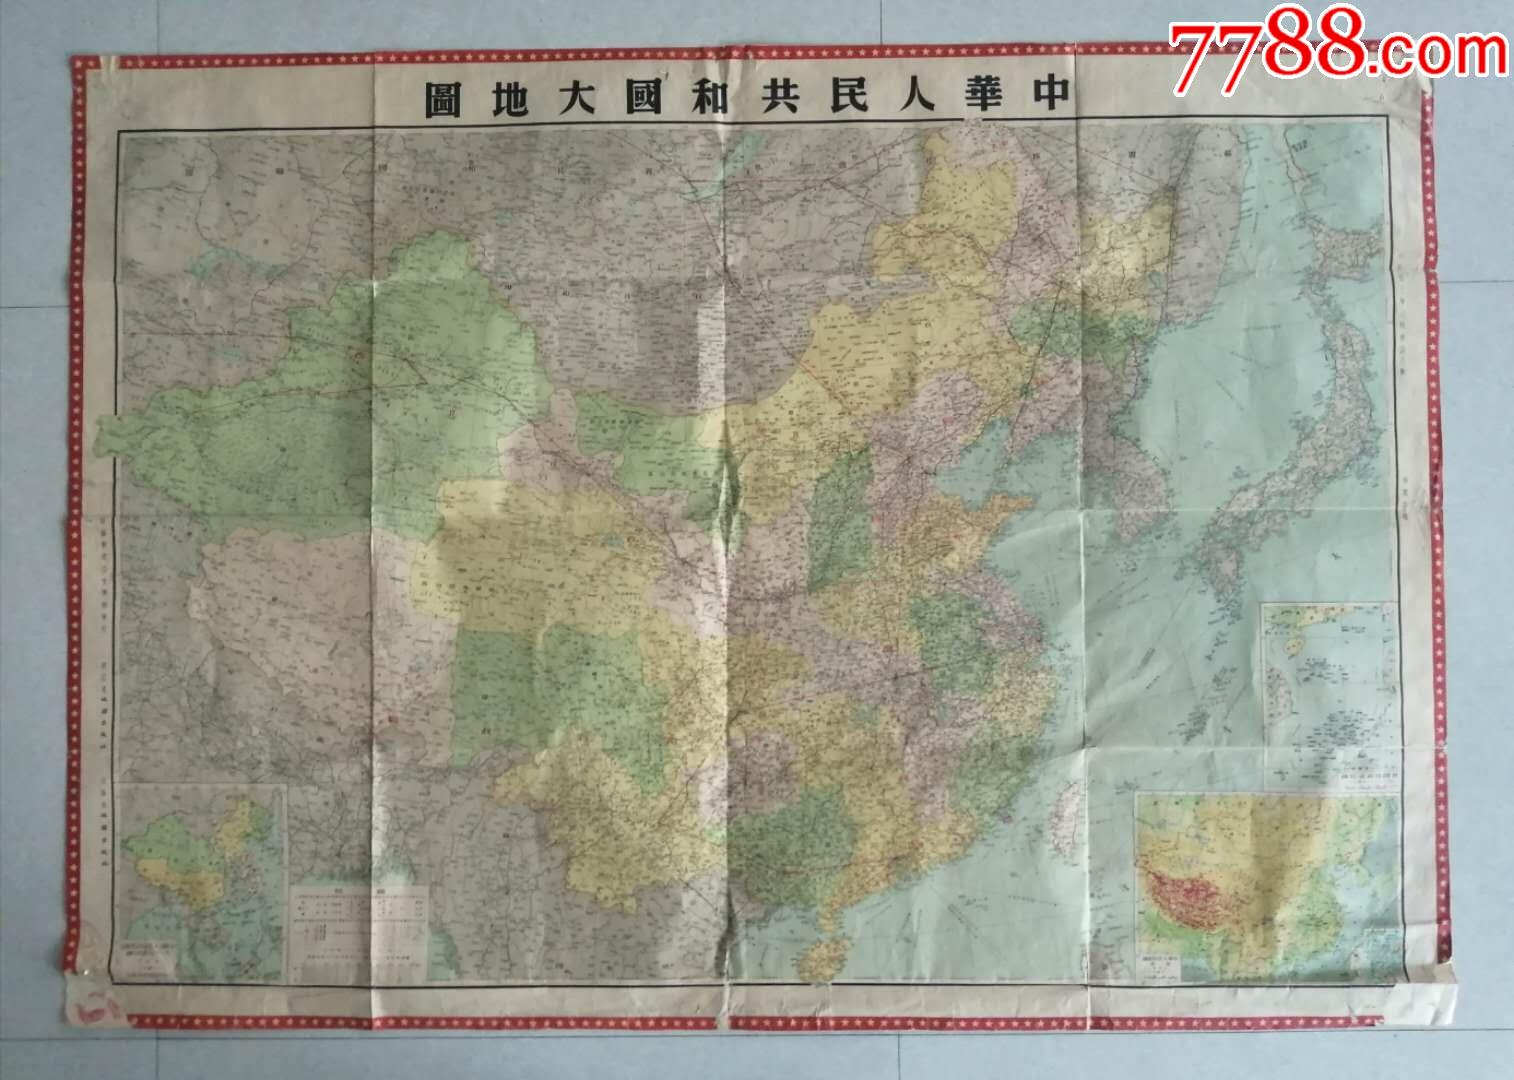 中国地图 - 中国地图高清版大图 - 中国地图全图高清版下载